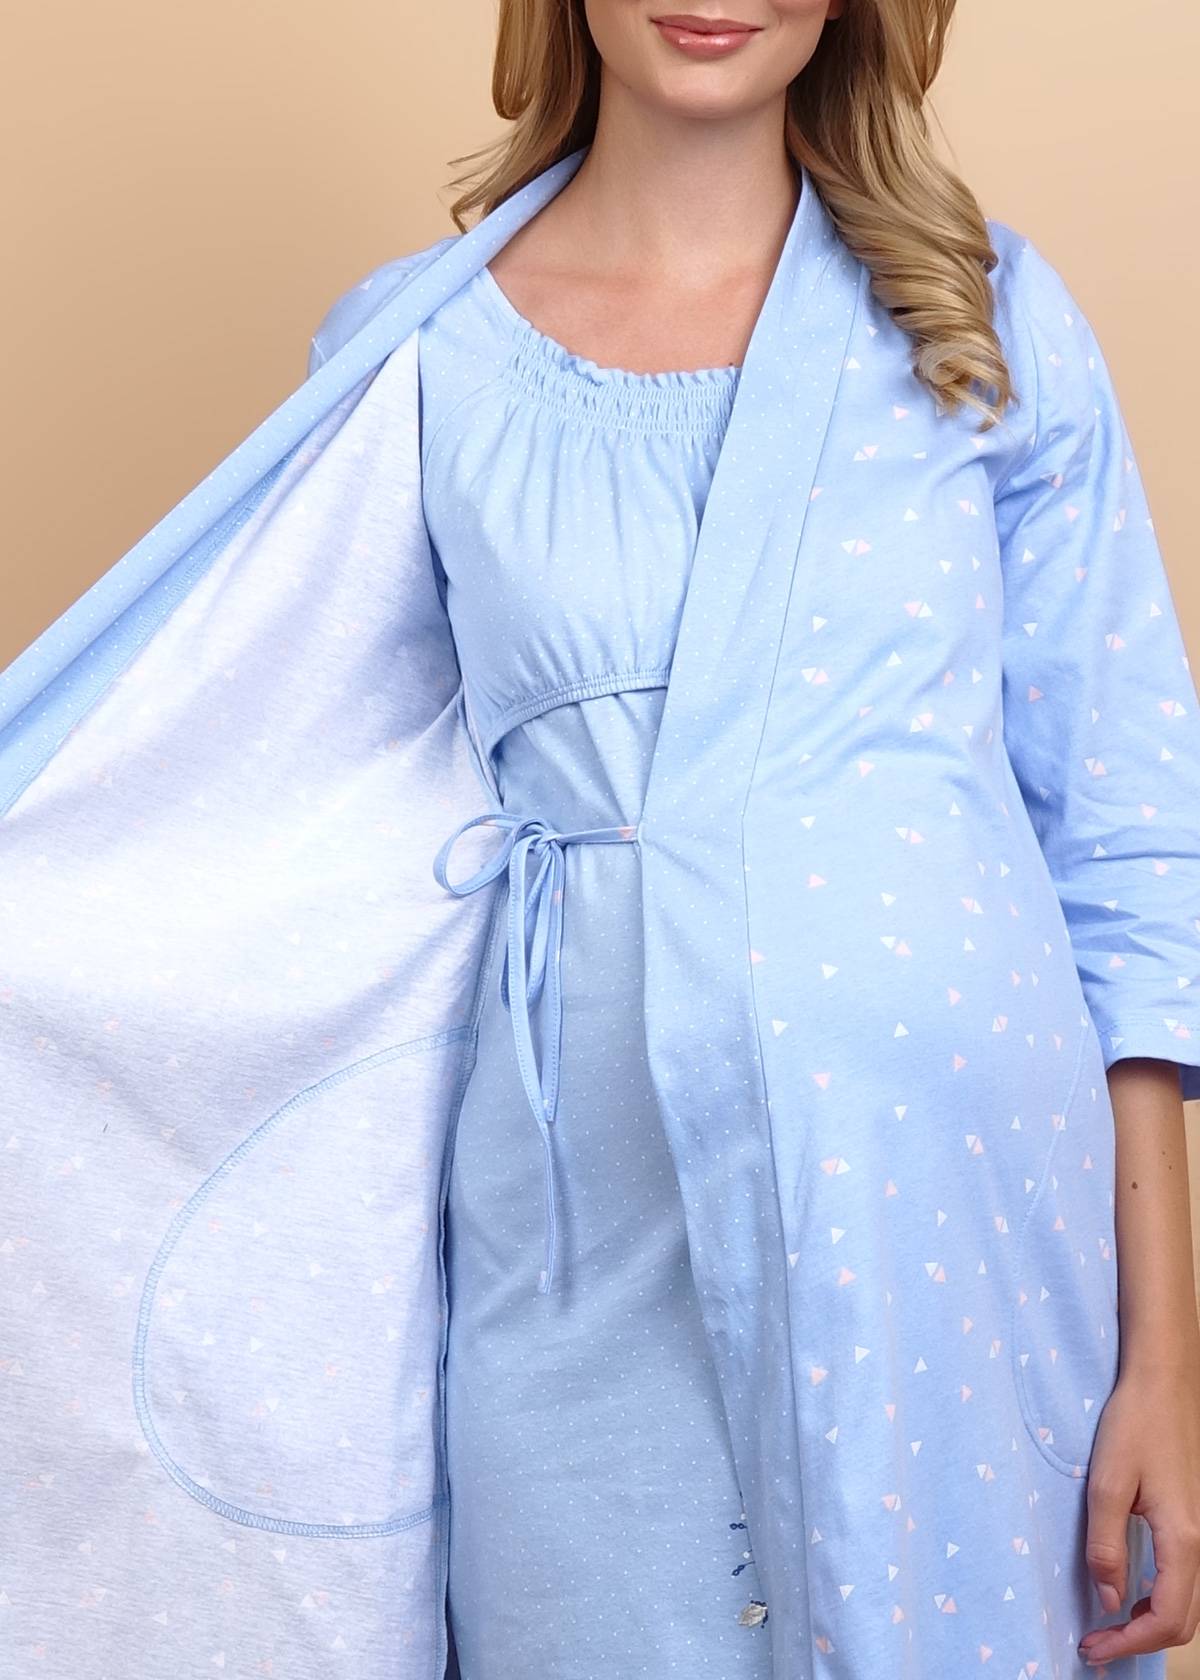 Как выбрать халат для беременных в роддом?